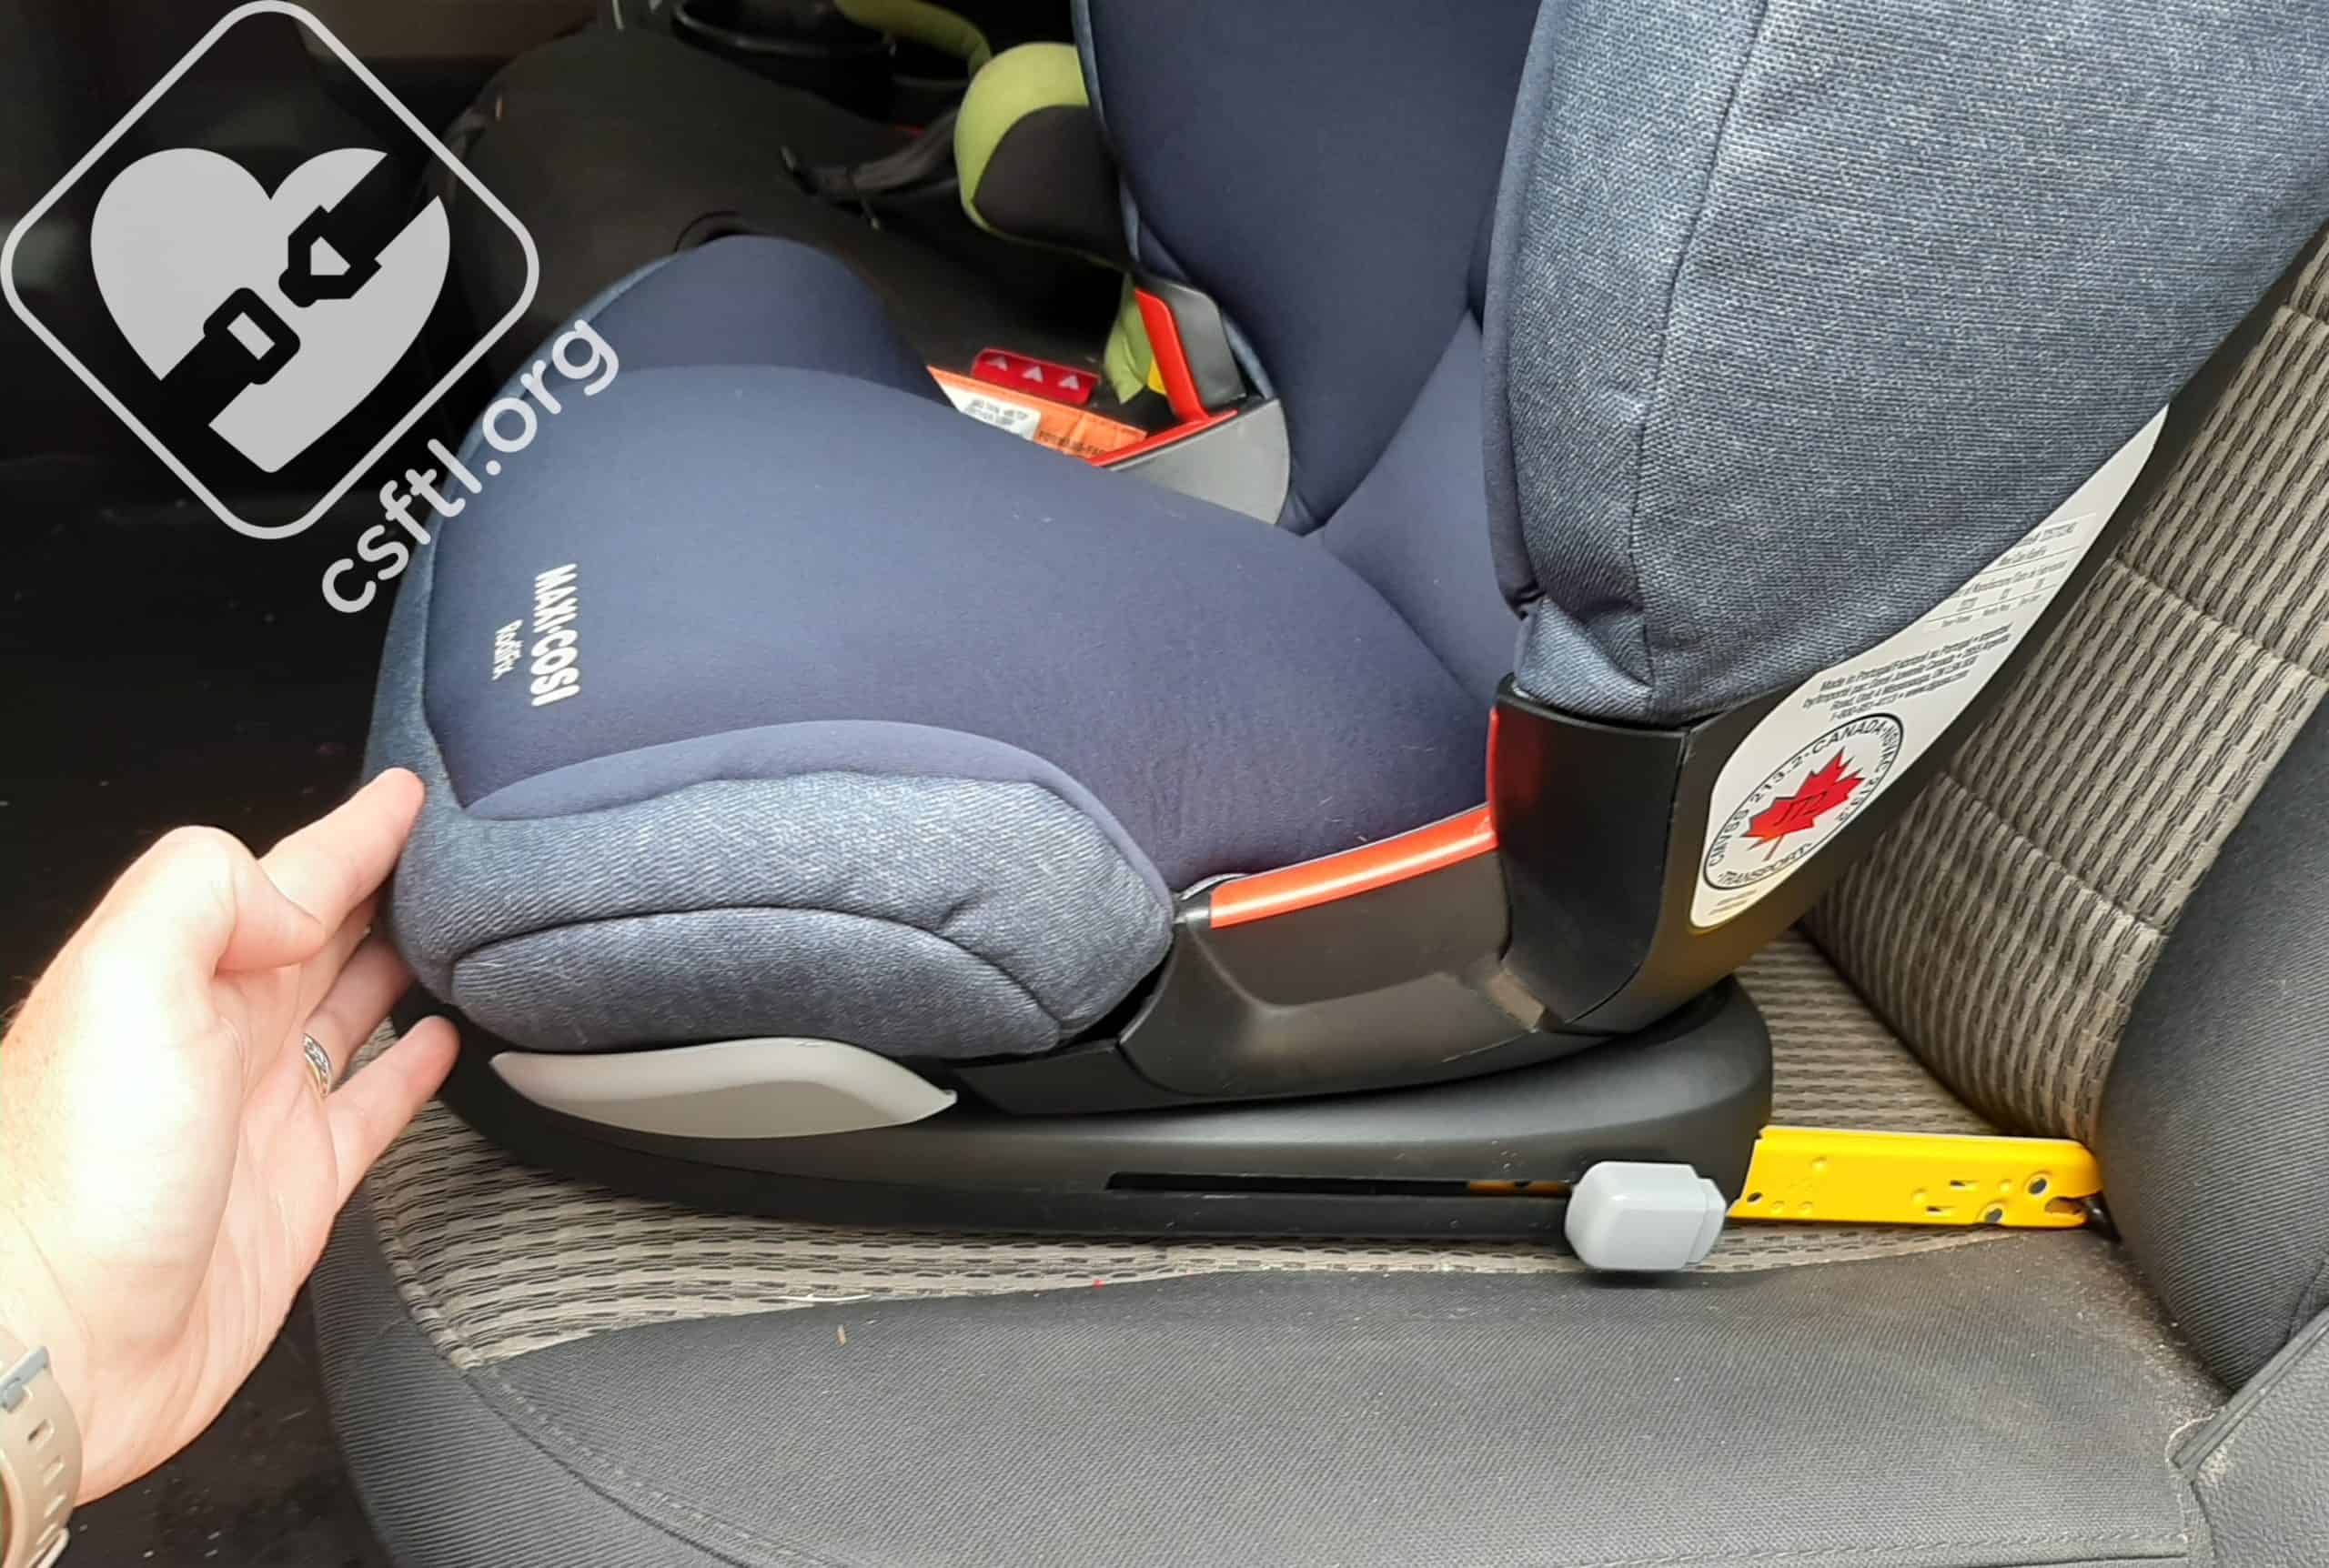 Maxi-Cosi RodiFix Booster Car Seat, 2019